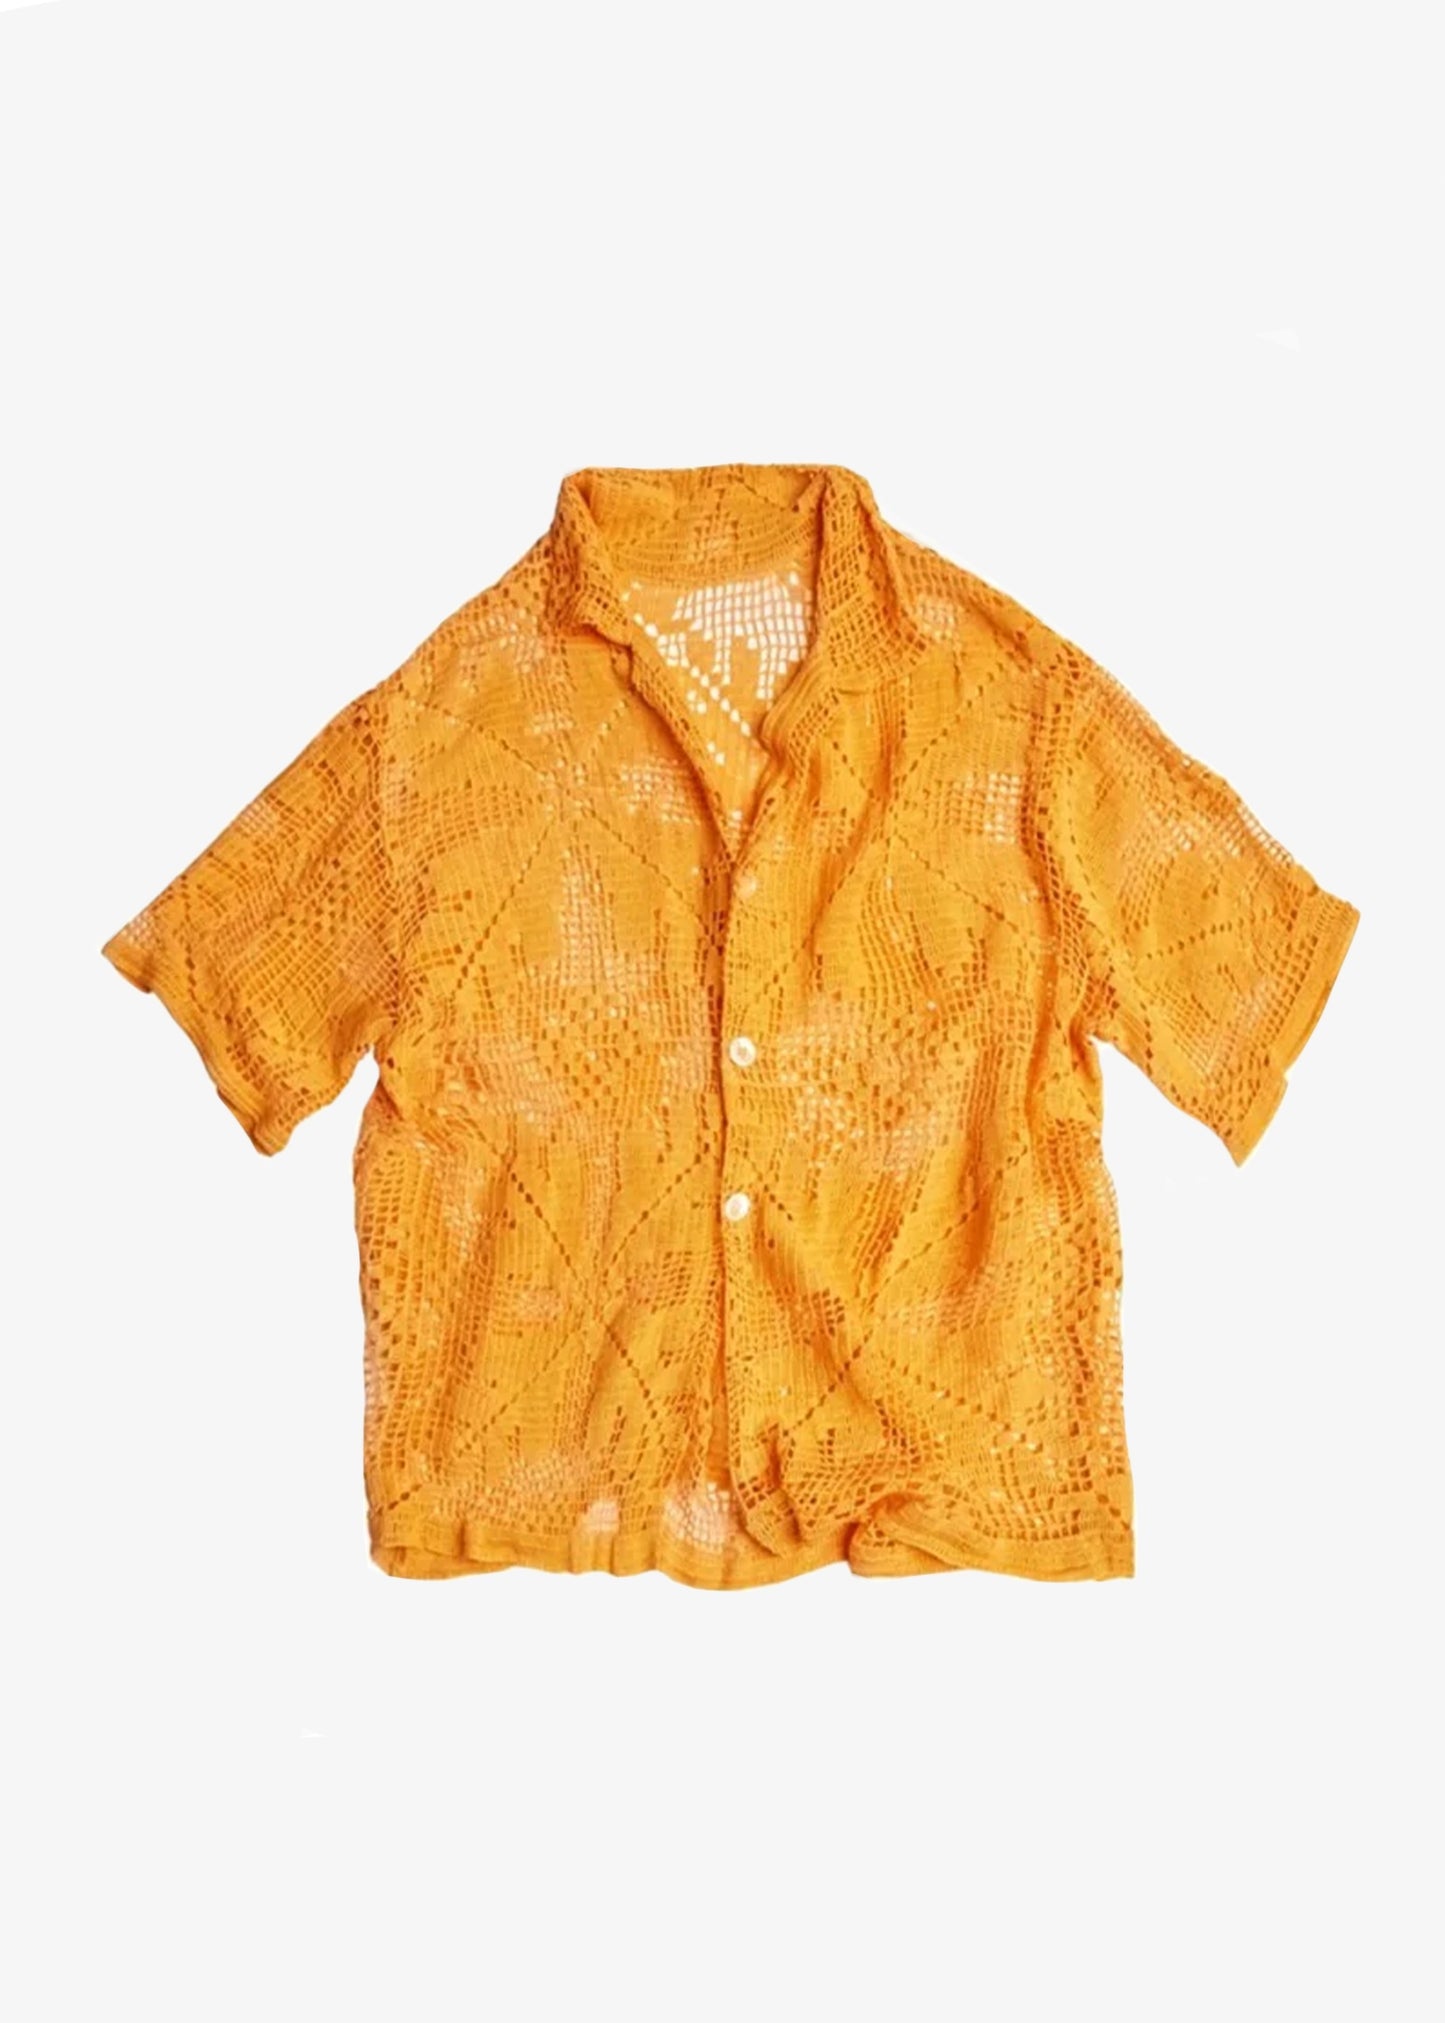 Aquarius-Cocktail-lacy-camp-shirt-vintage